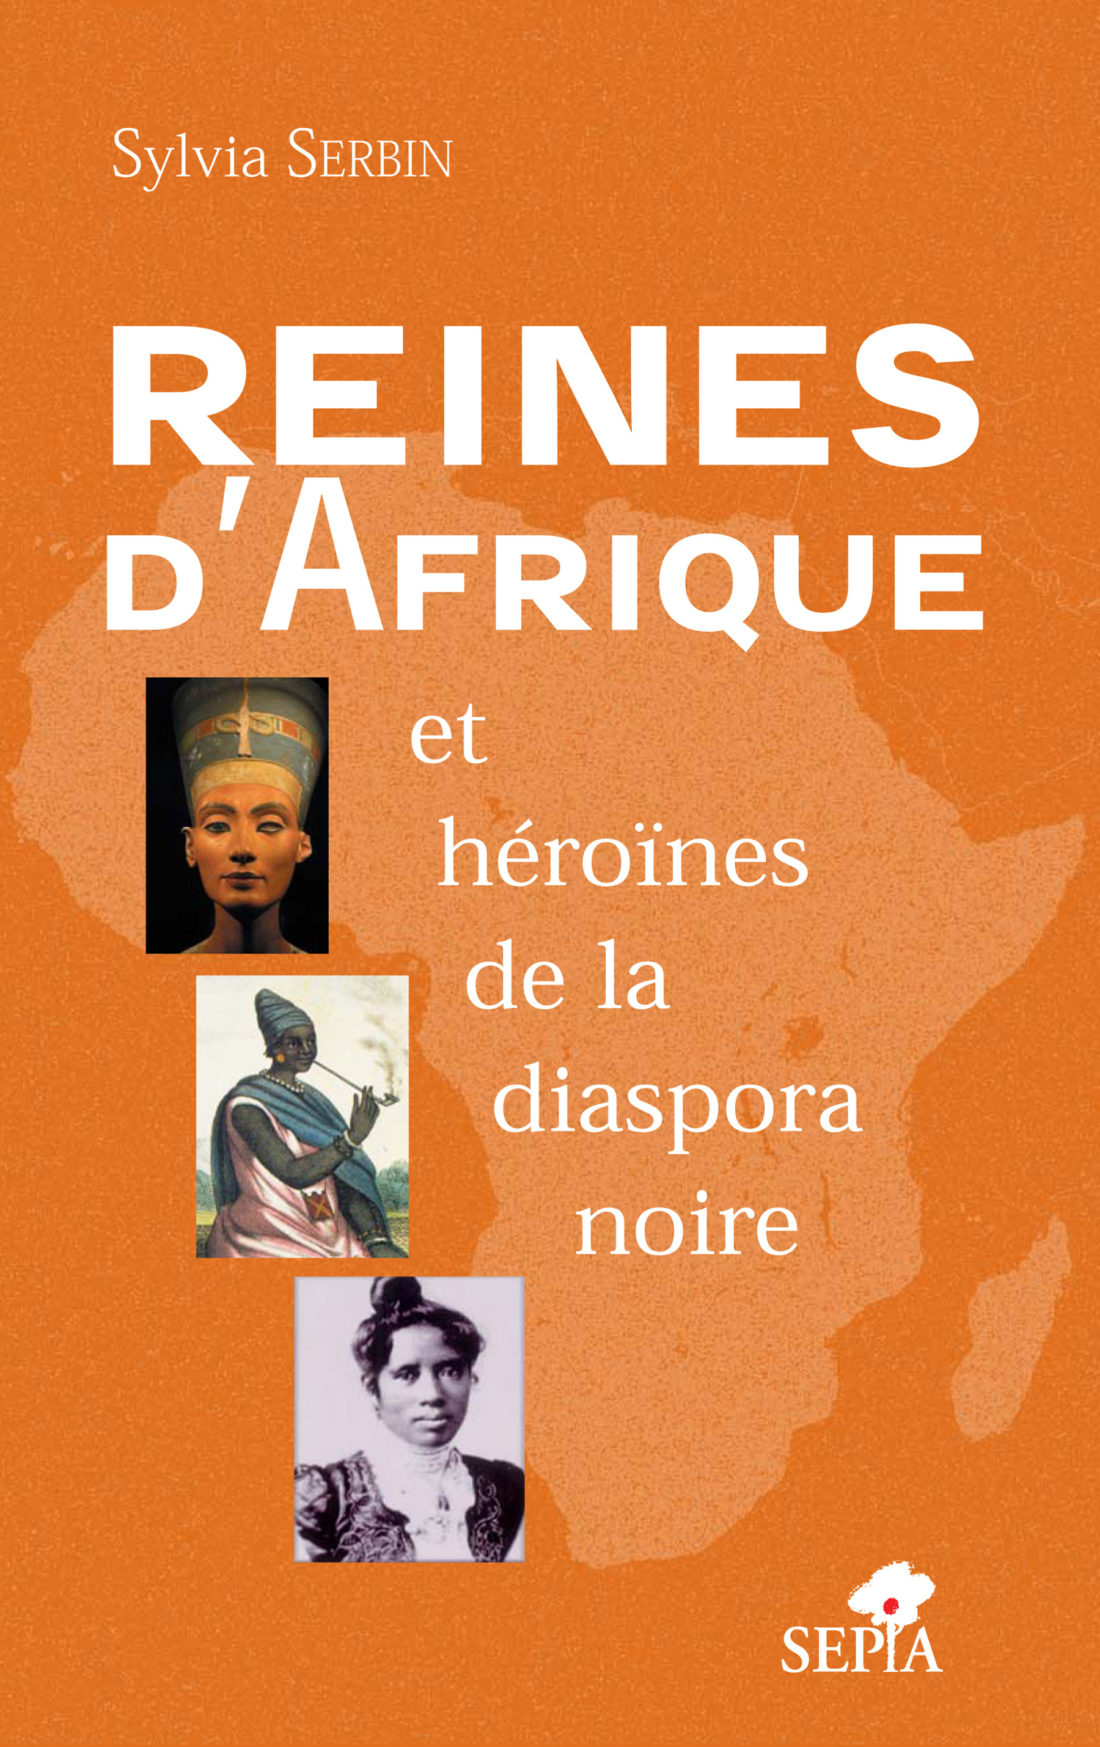 Couverture du livre REINES D'AFRIQUE ET HÉROÏNES DE LA DIASPORA NOIRE